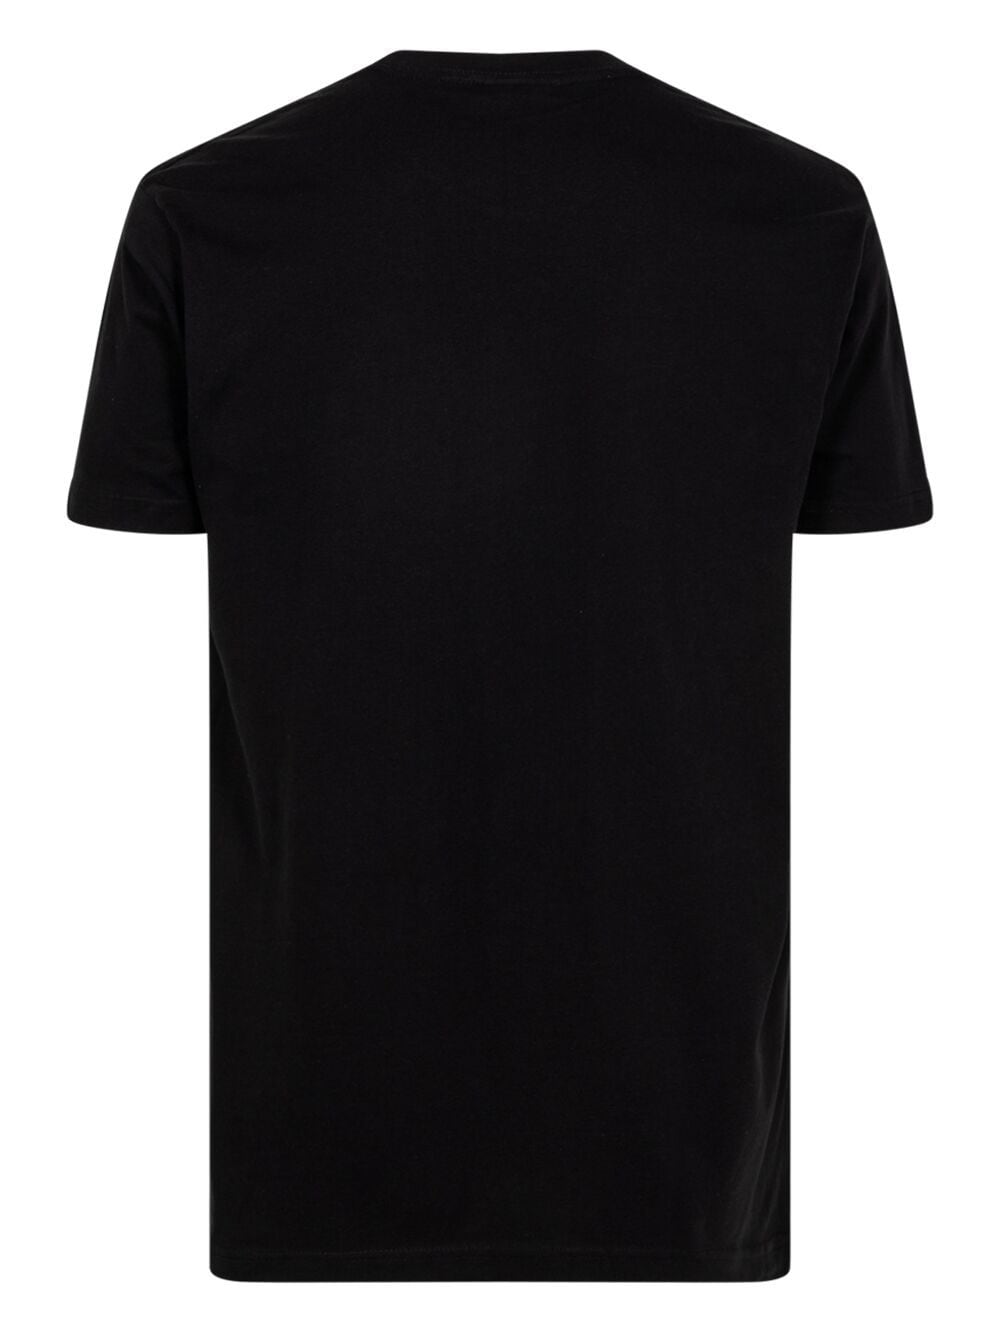 STADIUM GOODS® boxed tilt logo "Black" T-shirt - Zwart